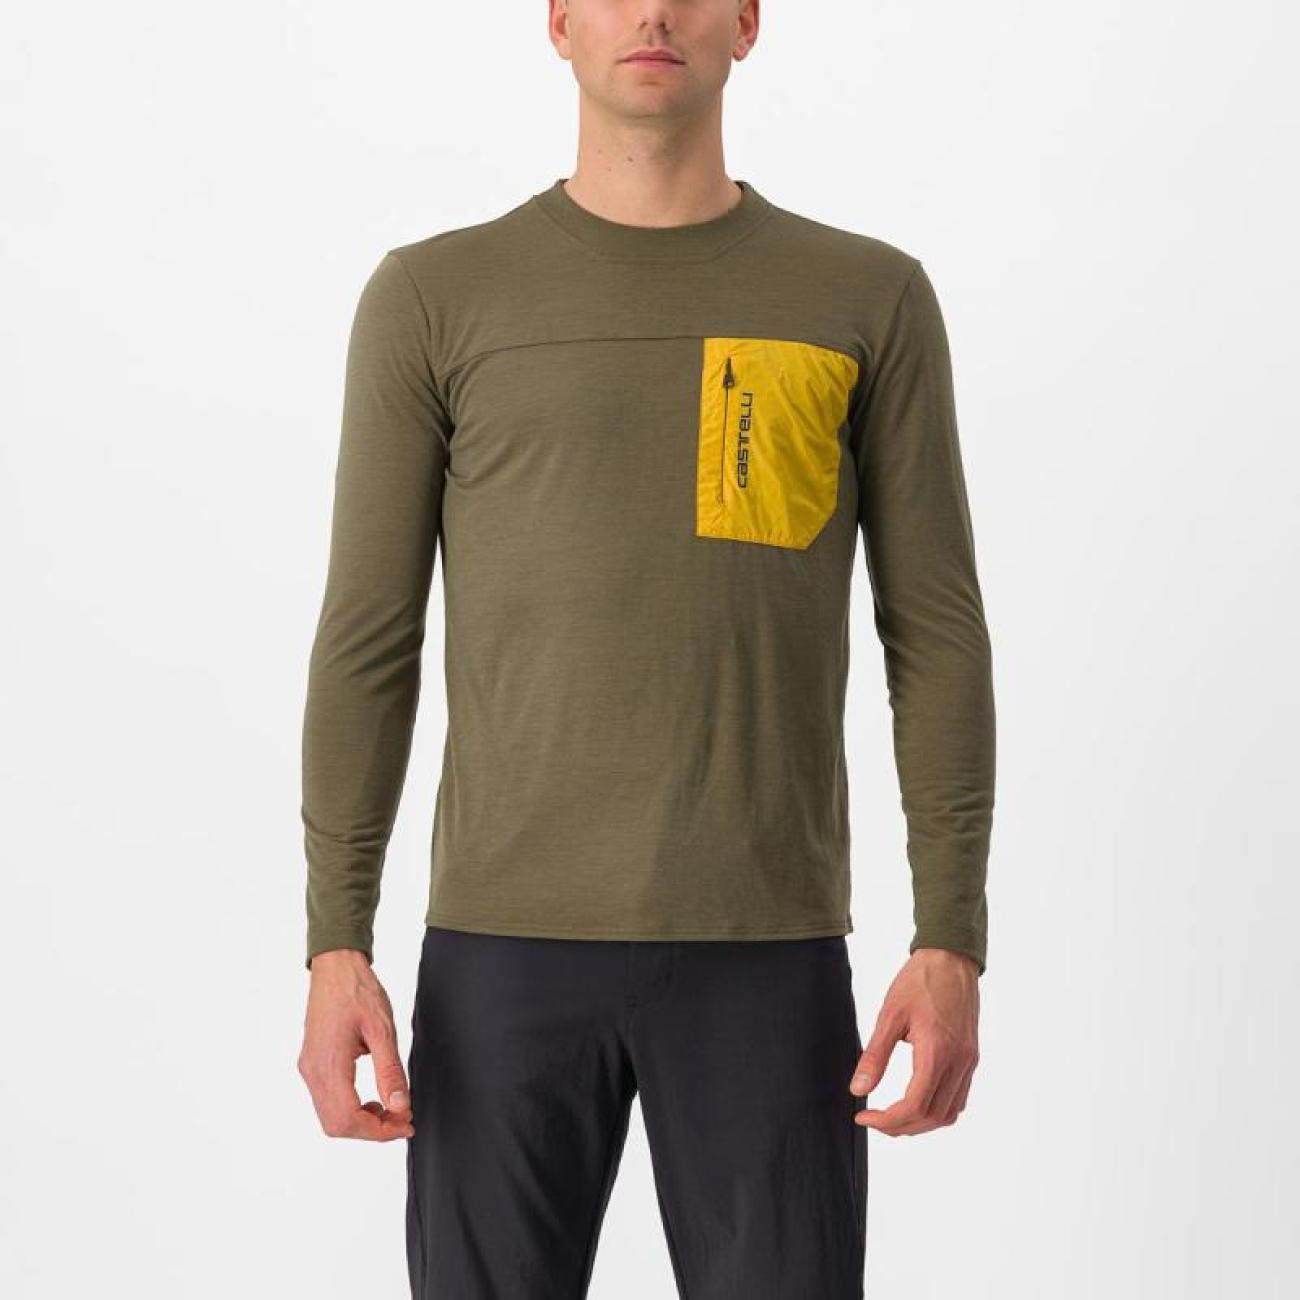 CASTELLI Zimowa Koszulka Kolarska Z Długim Rękawem - UNLIMITED MERINO - Brązowy/żółty